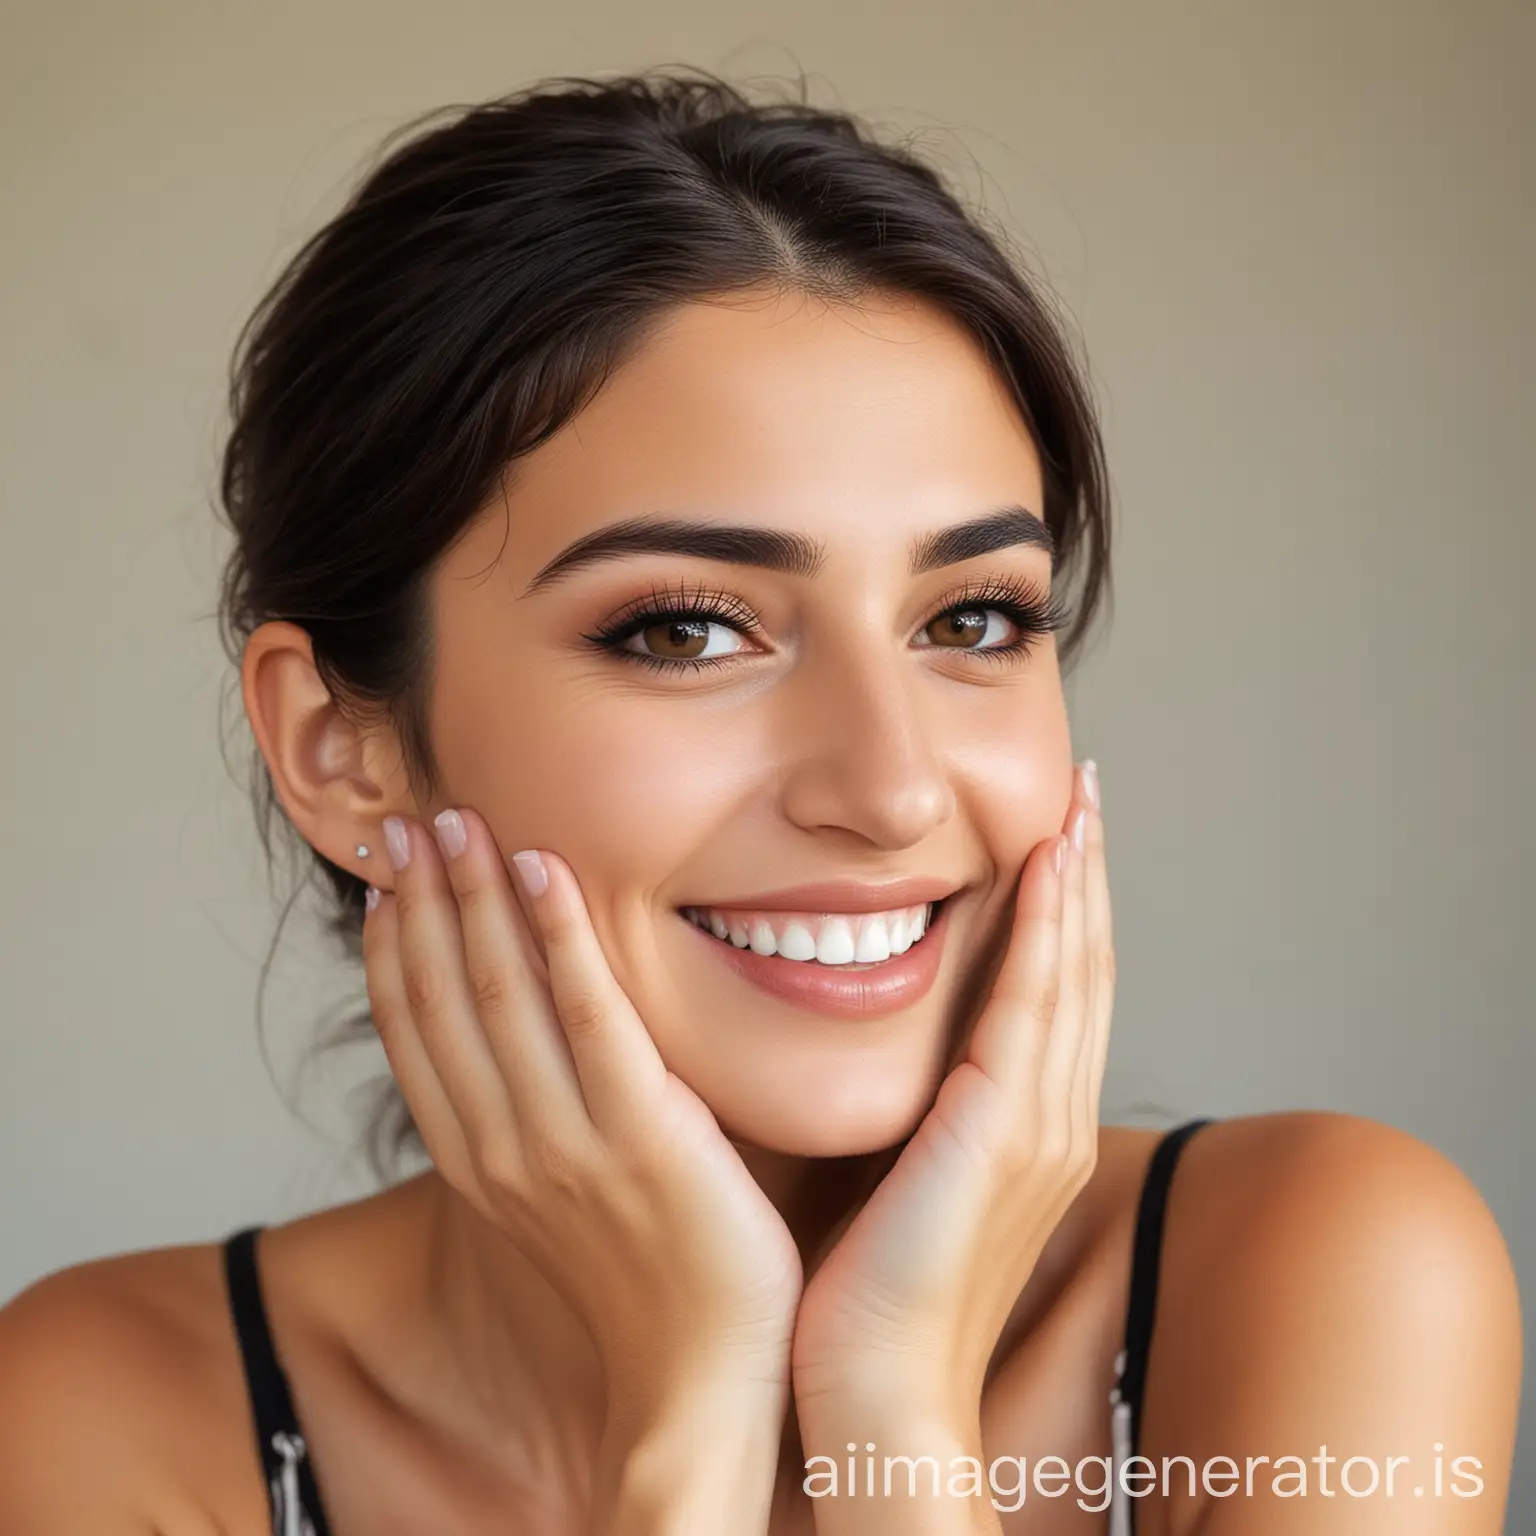 A young pretty Armenian woman smiling touching her chin.